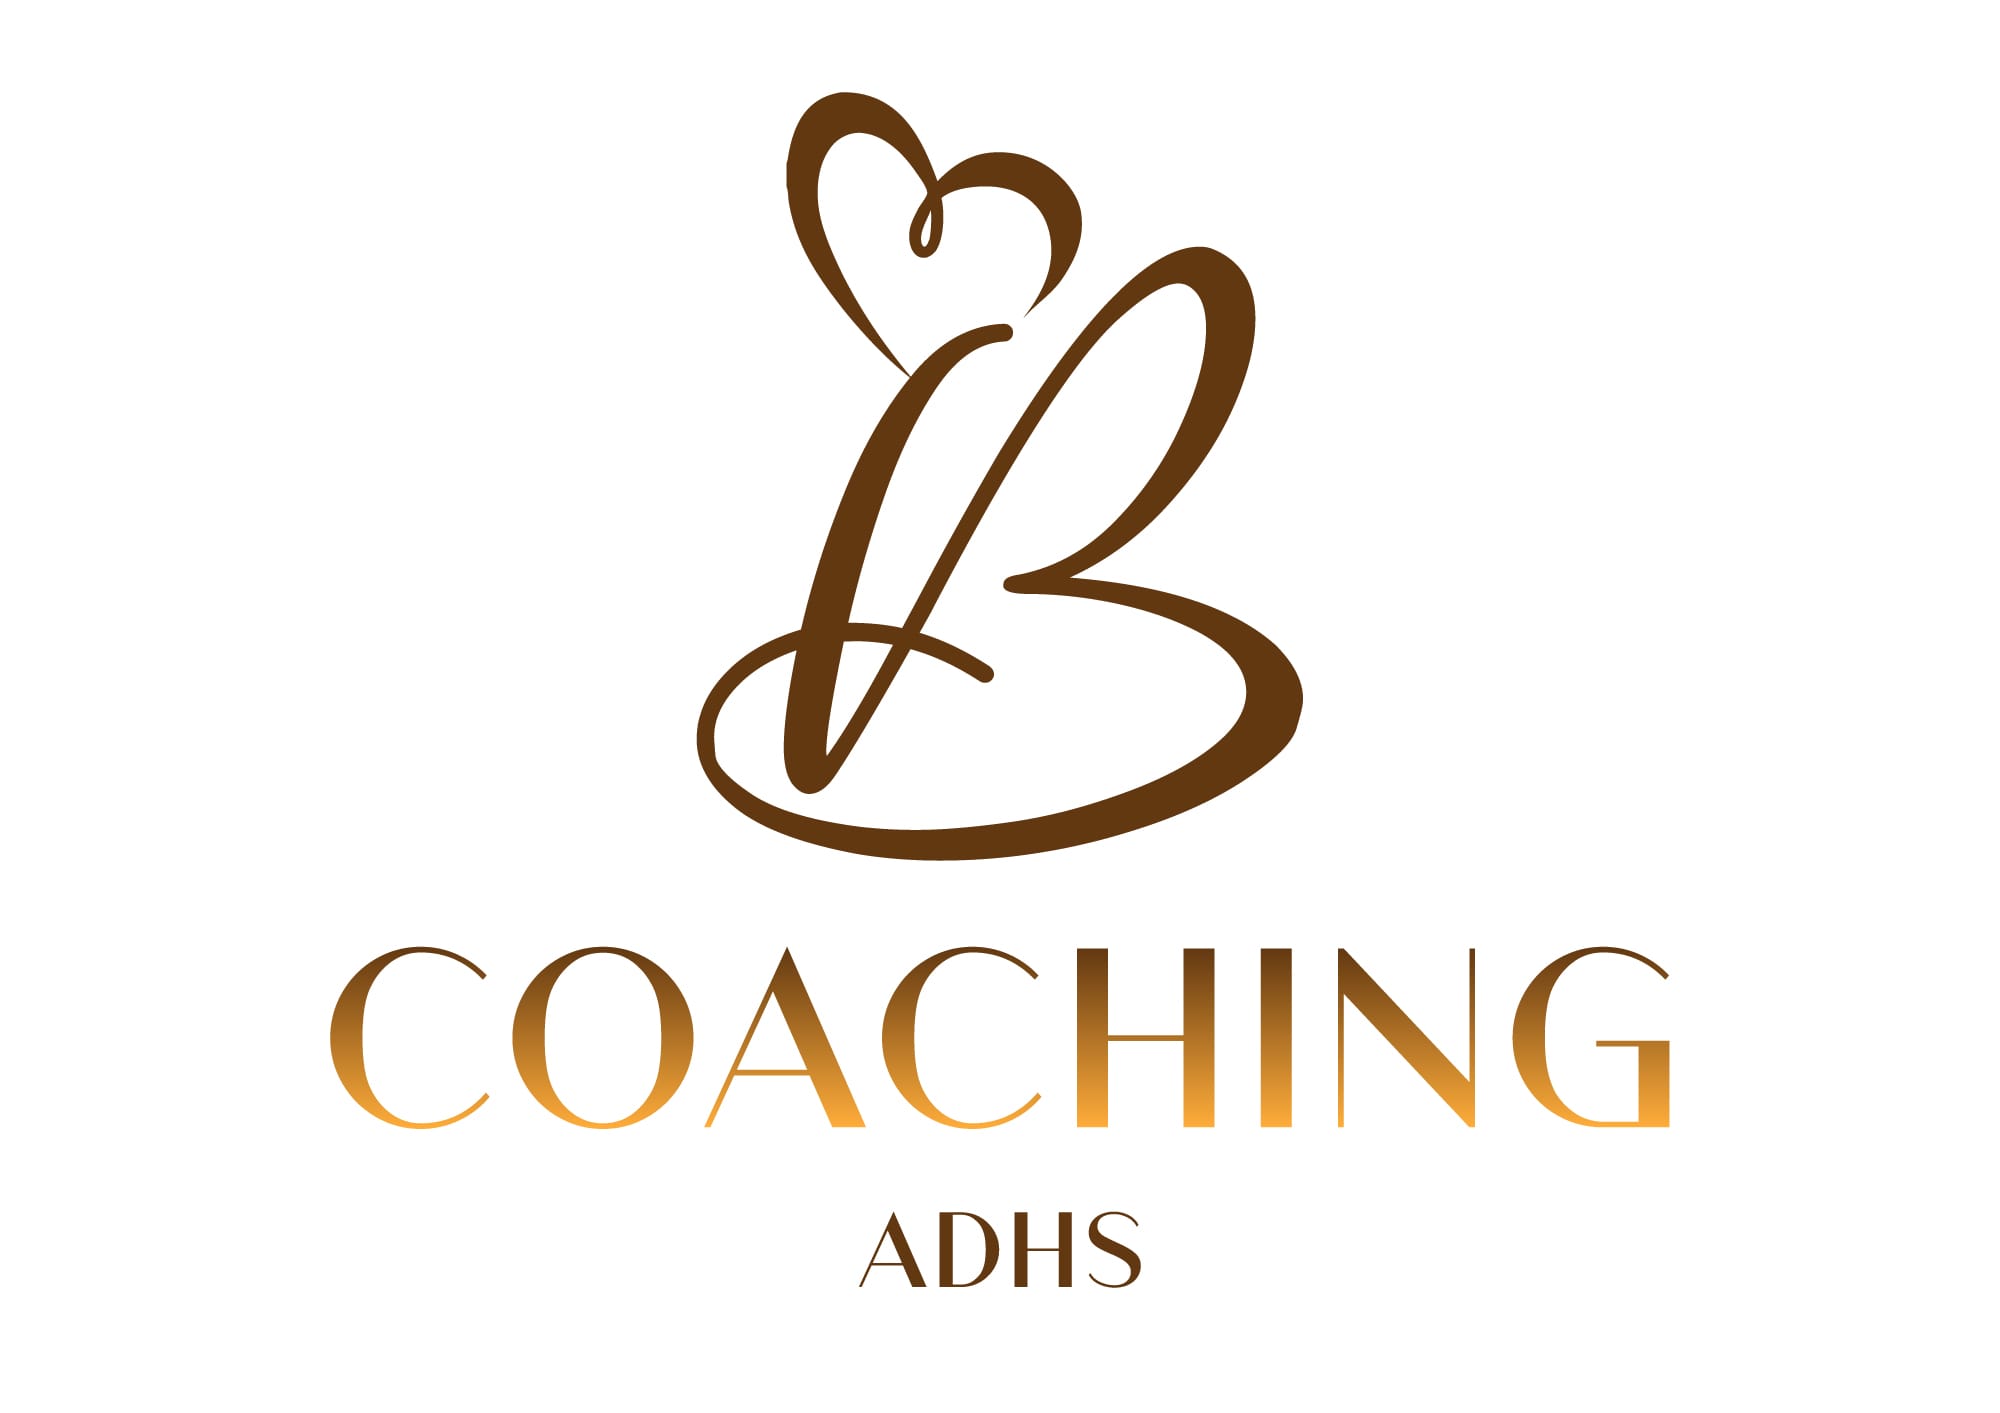 IB Coaching ADHS